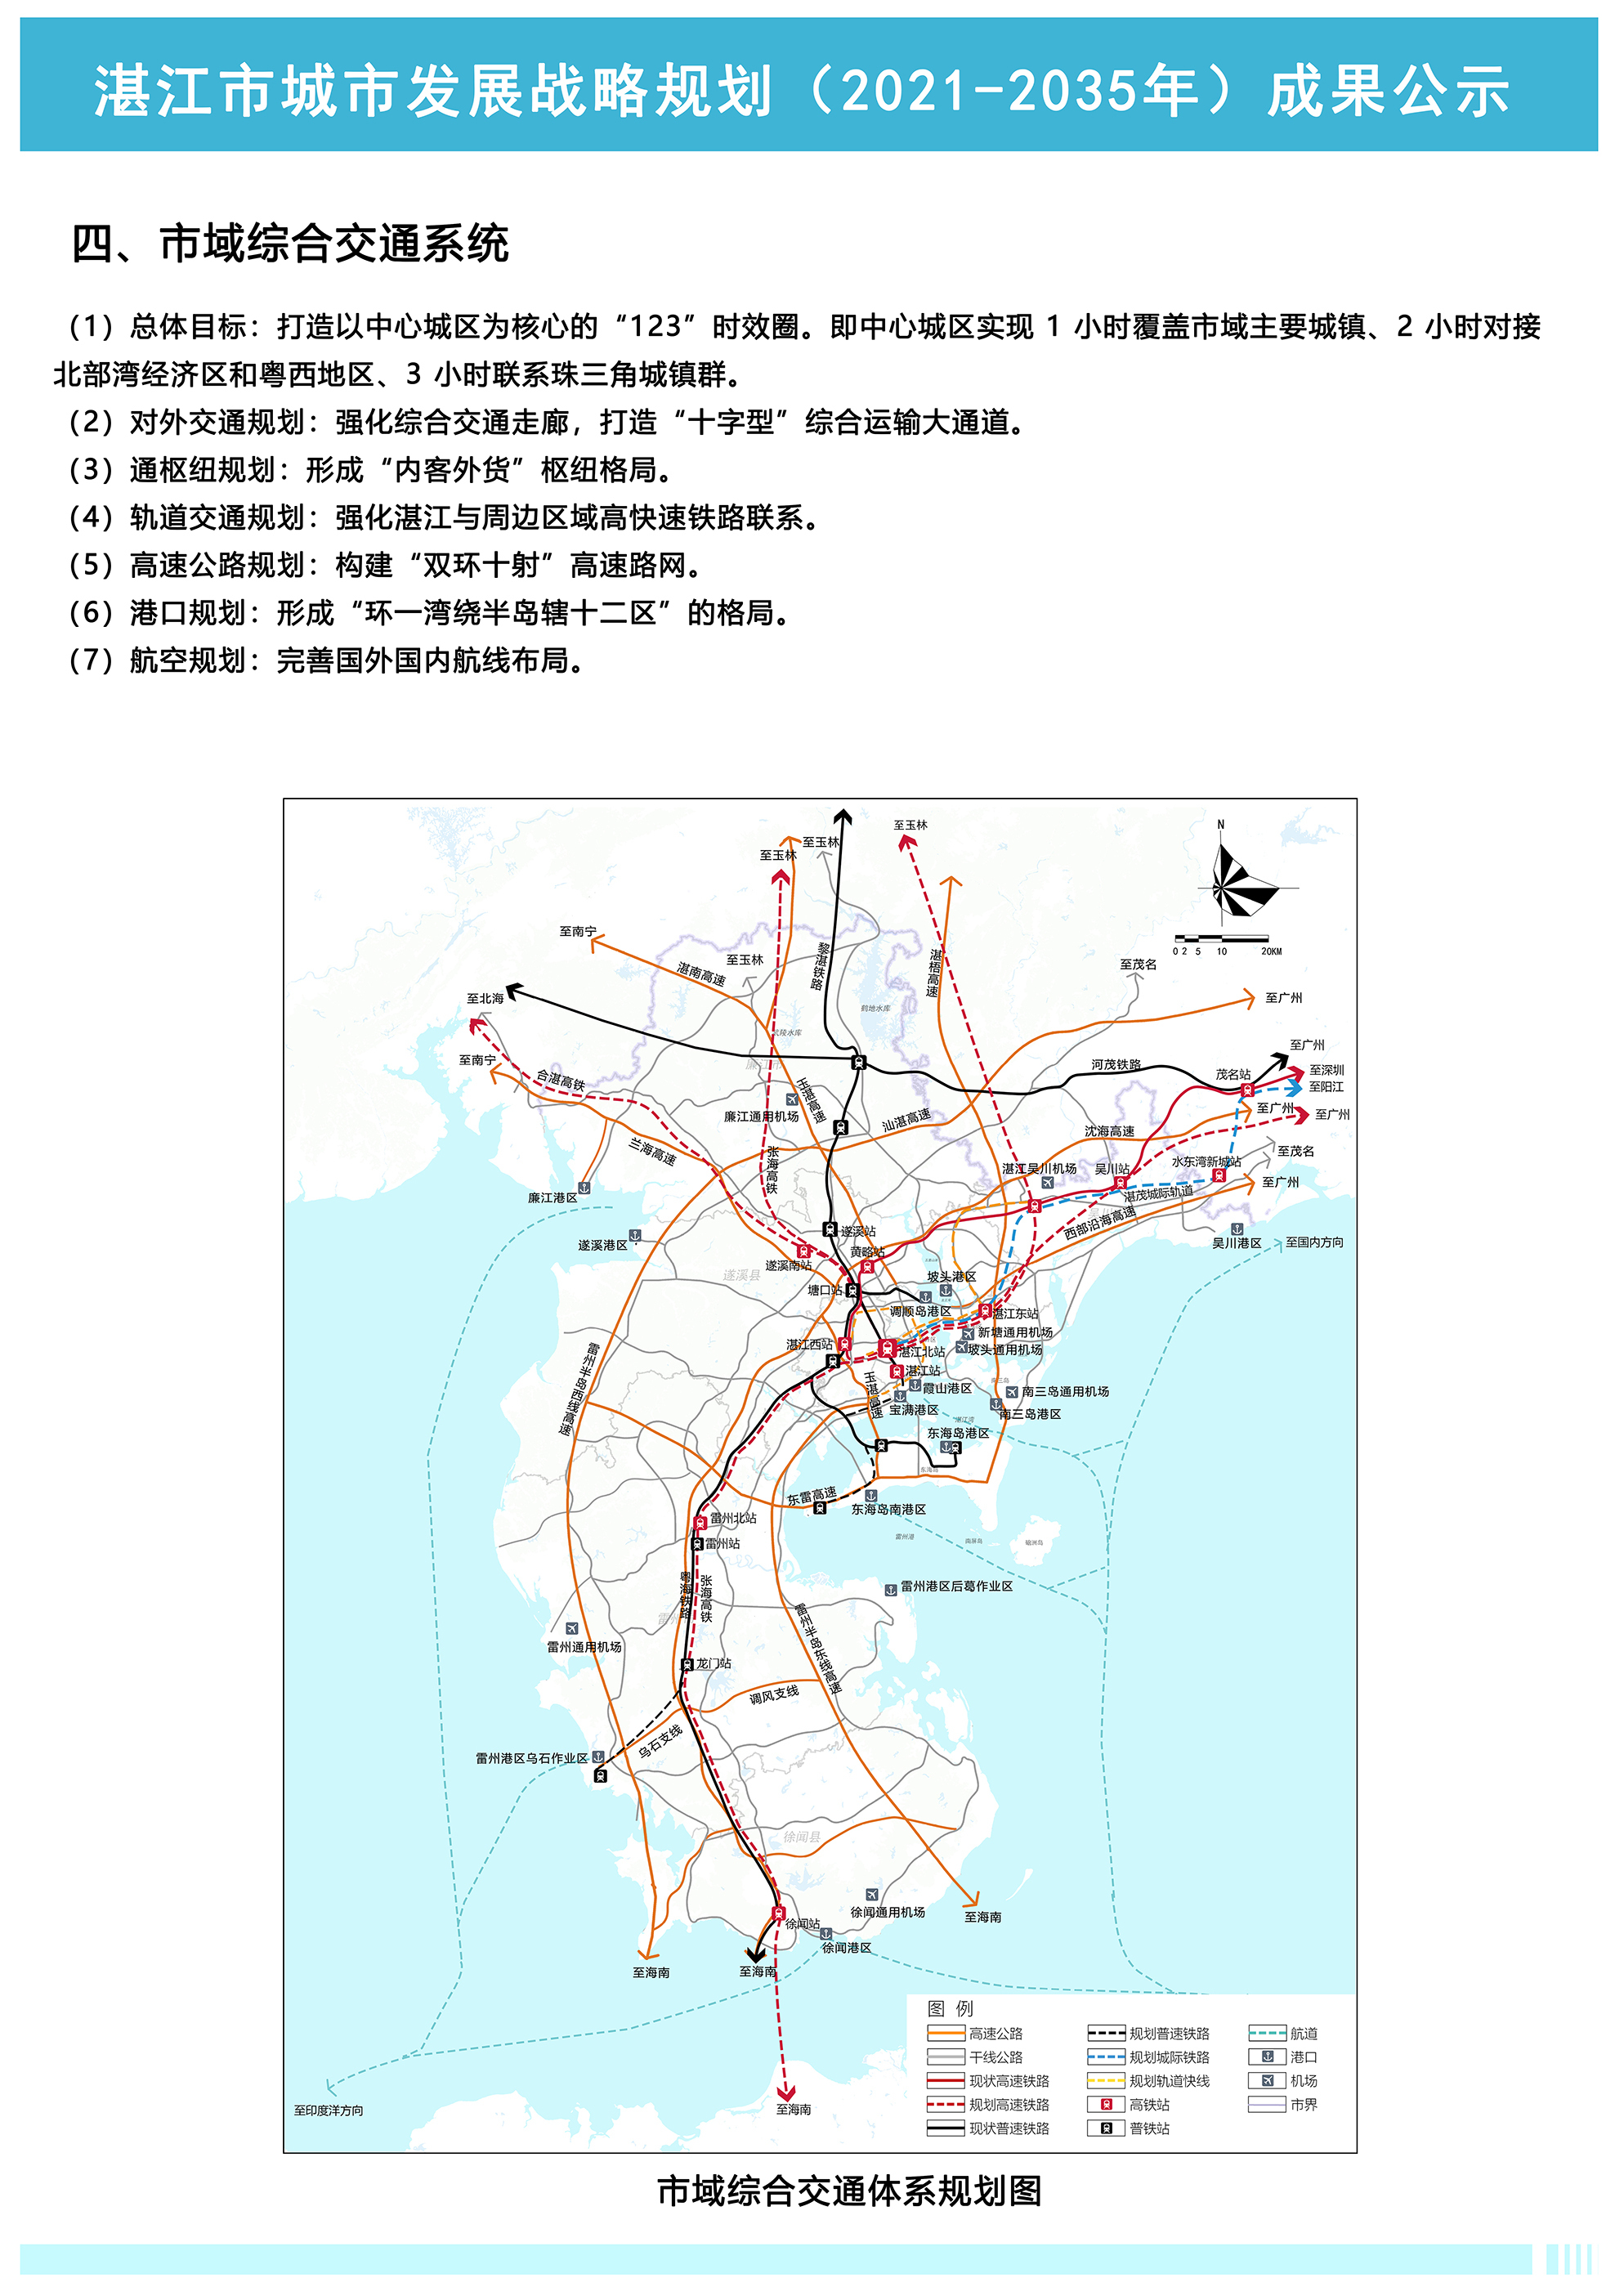 湛江市城市发展战略规划成果批前公示主要以港口海洋金融科技为核心